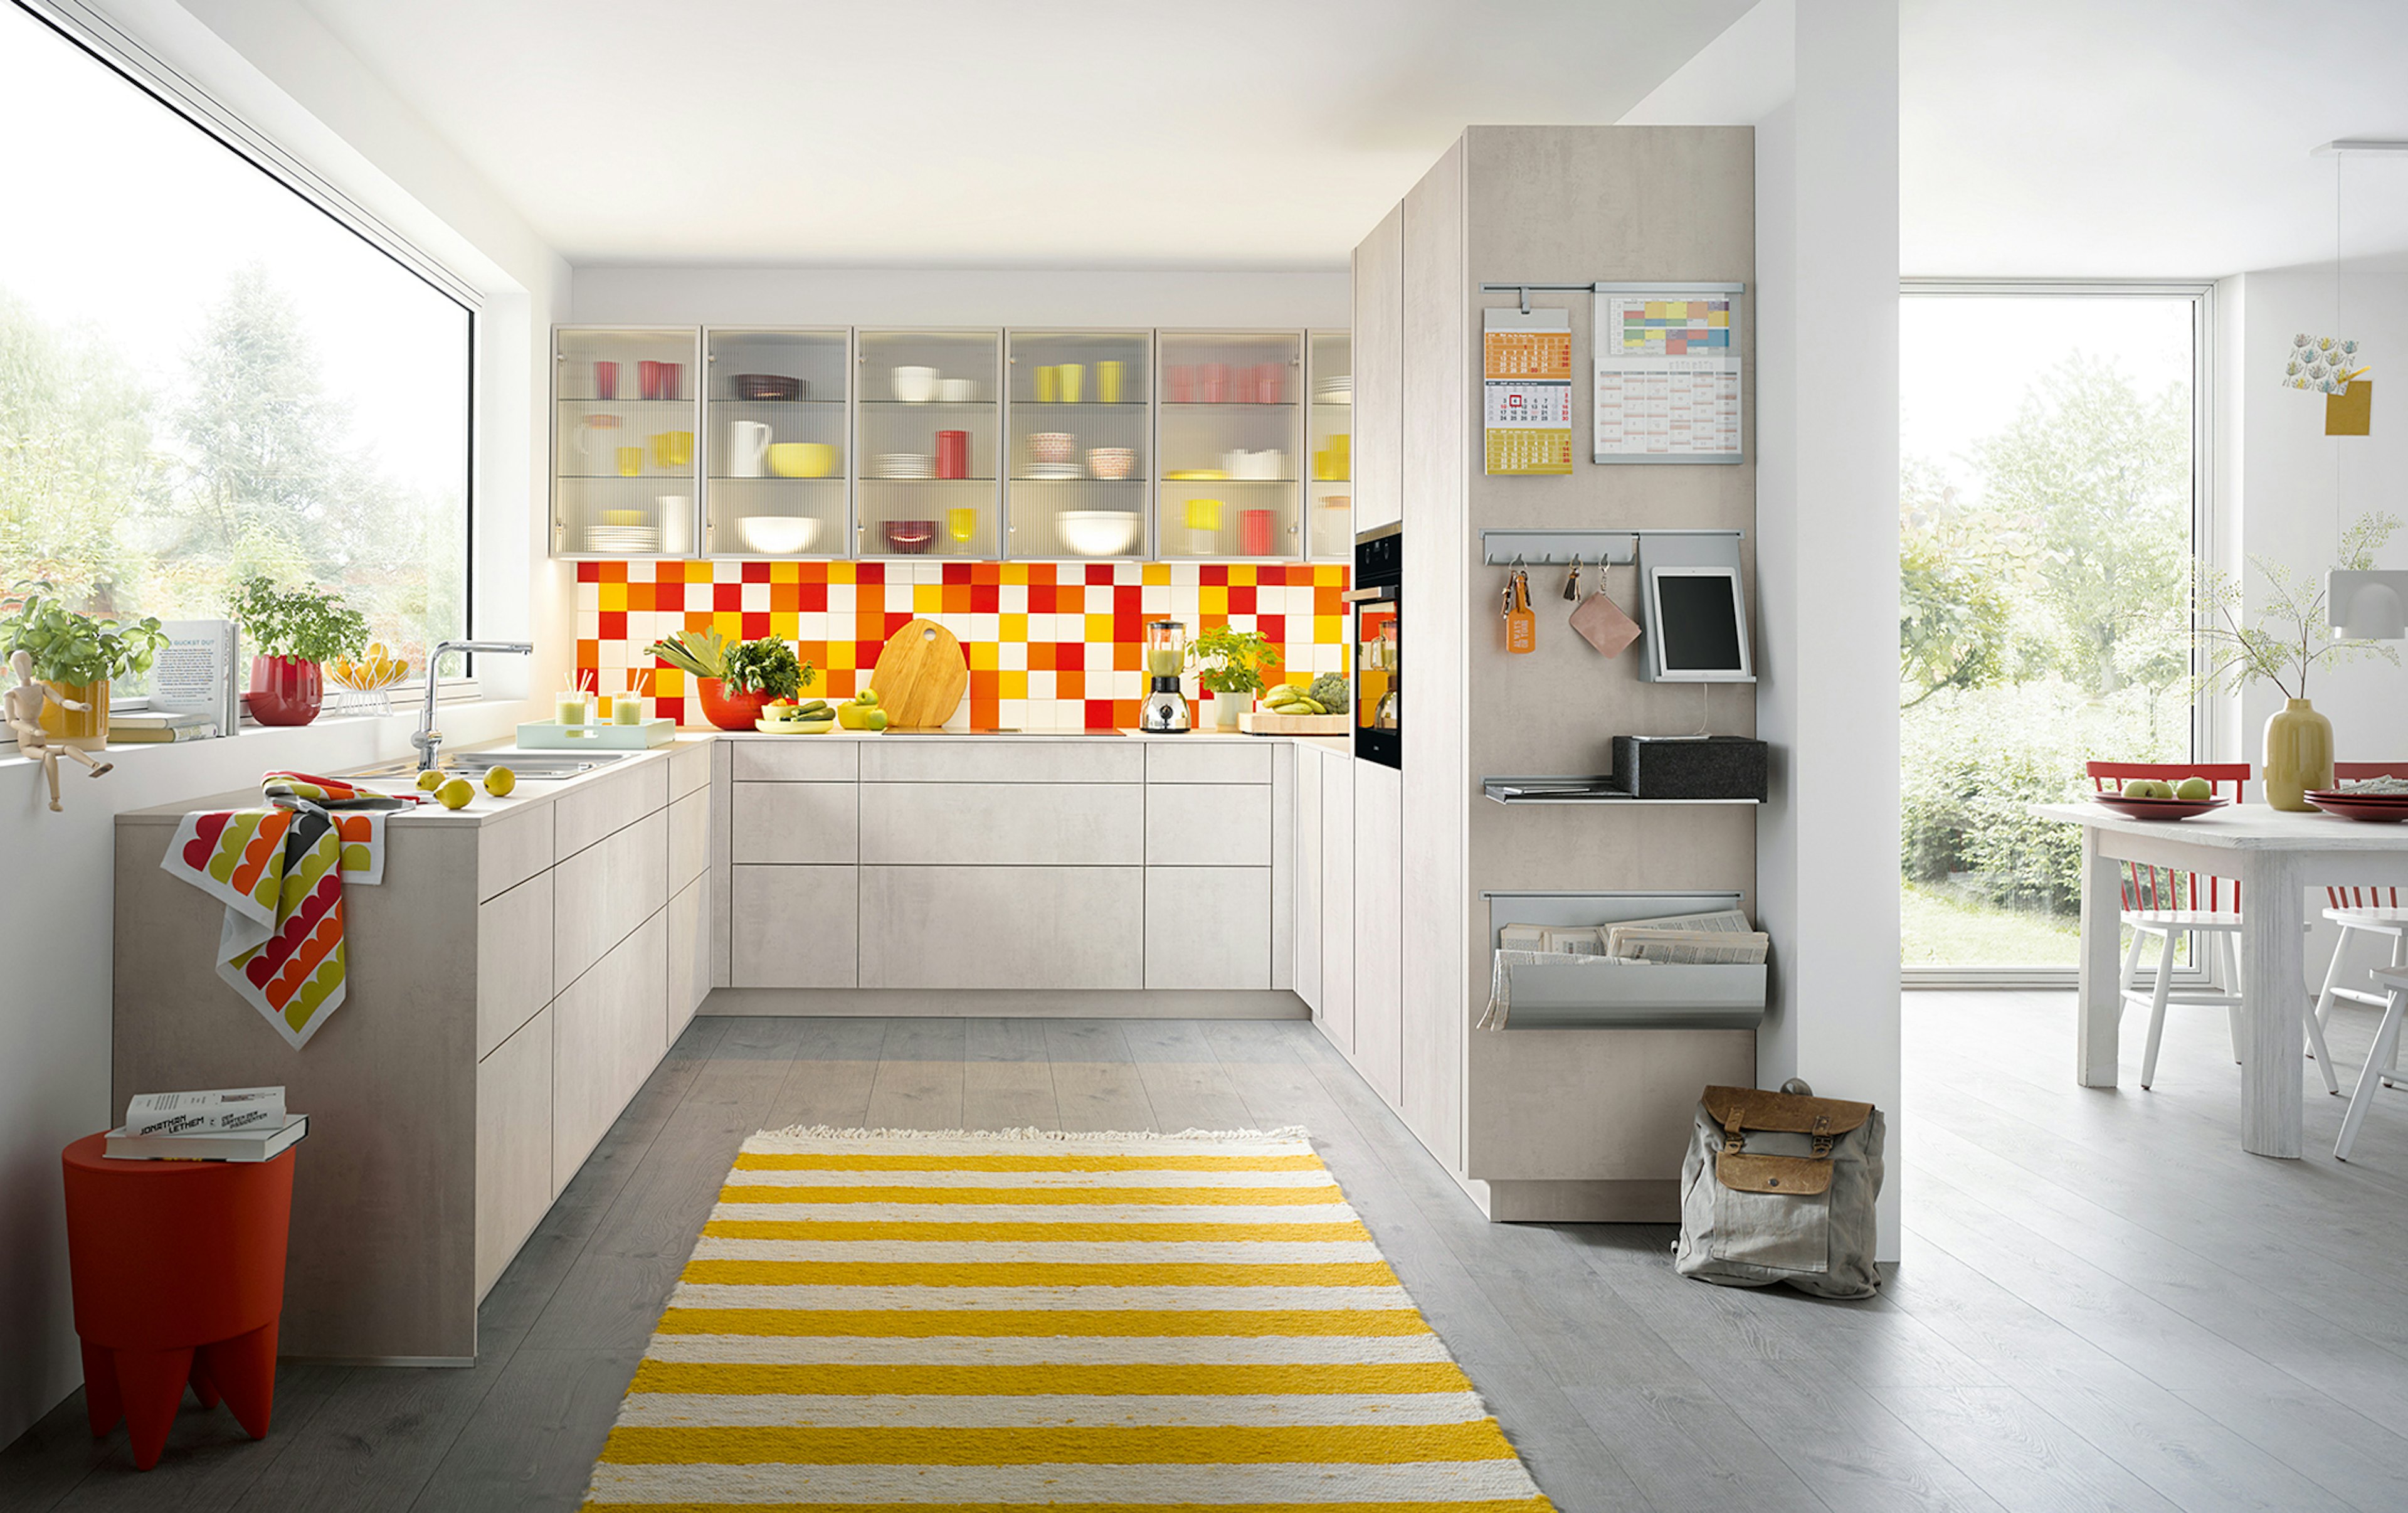 U-keuken in een neutrale kleur met kleurrijke accenten.